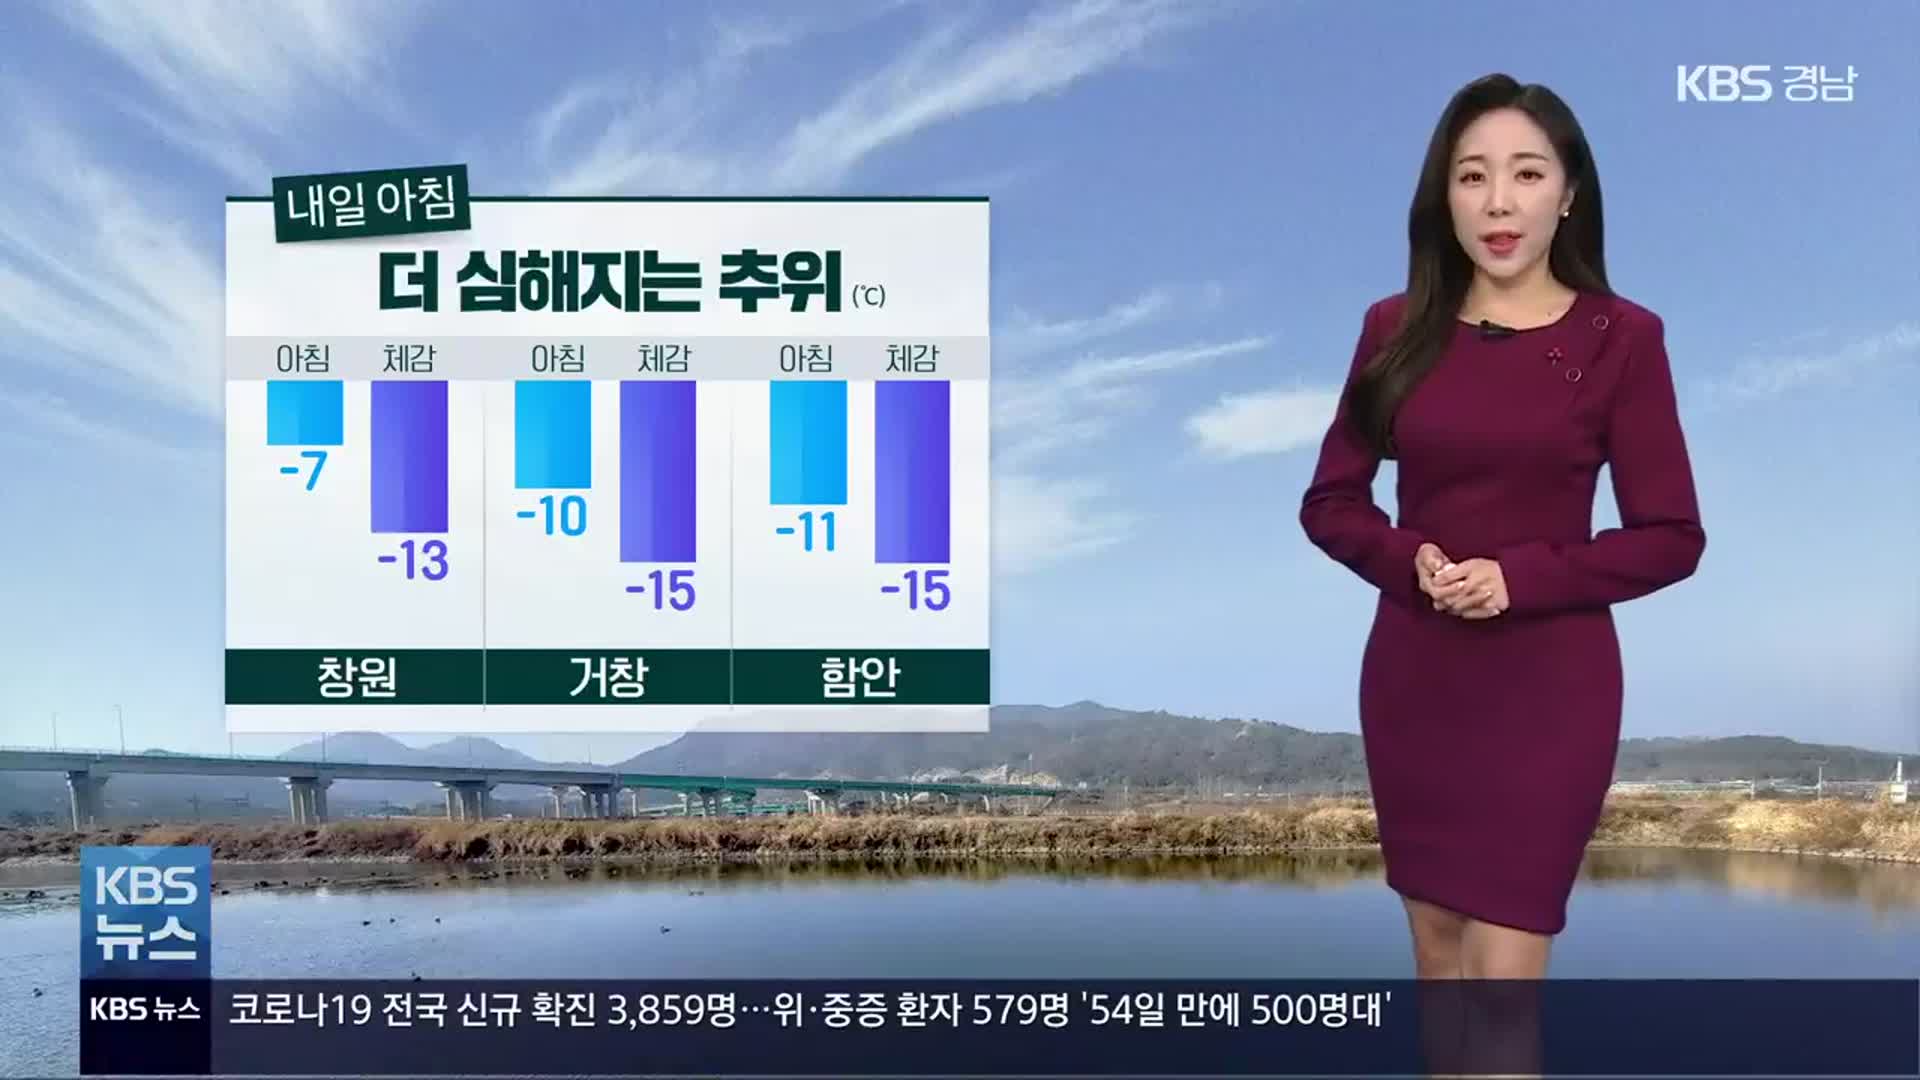 [날씨] 경남 내일 오늘보다 더 추워…체감 온도 -15도 안팎